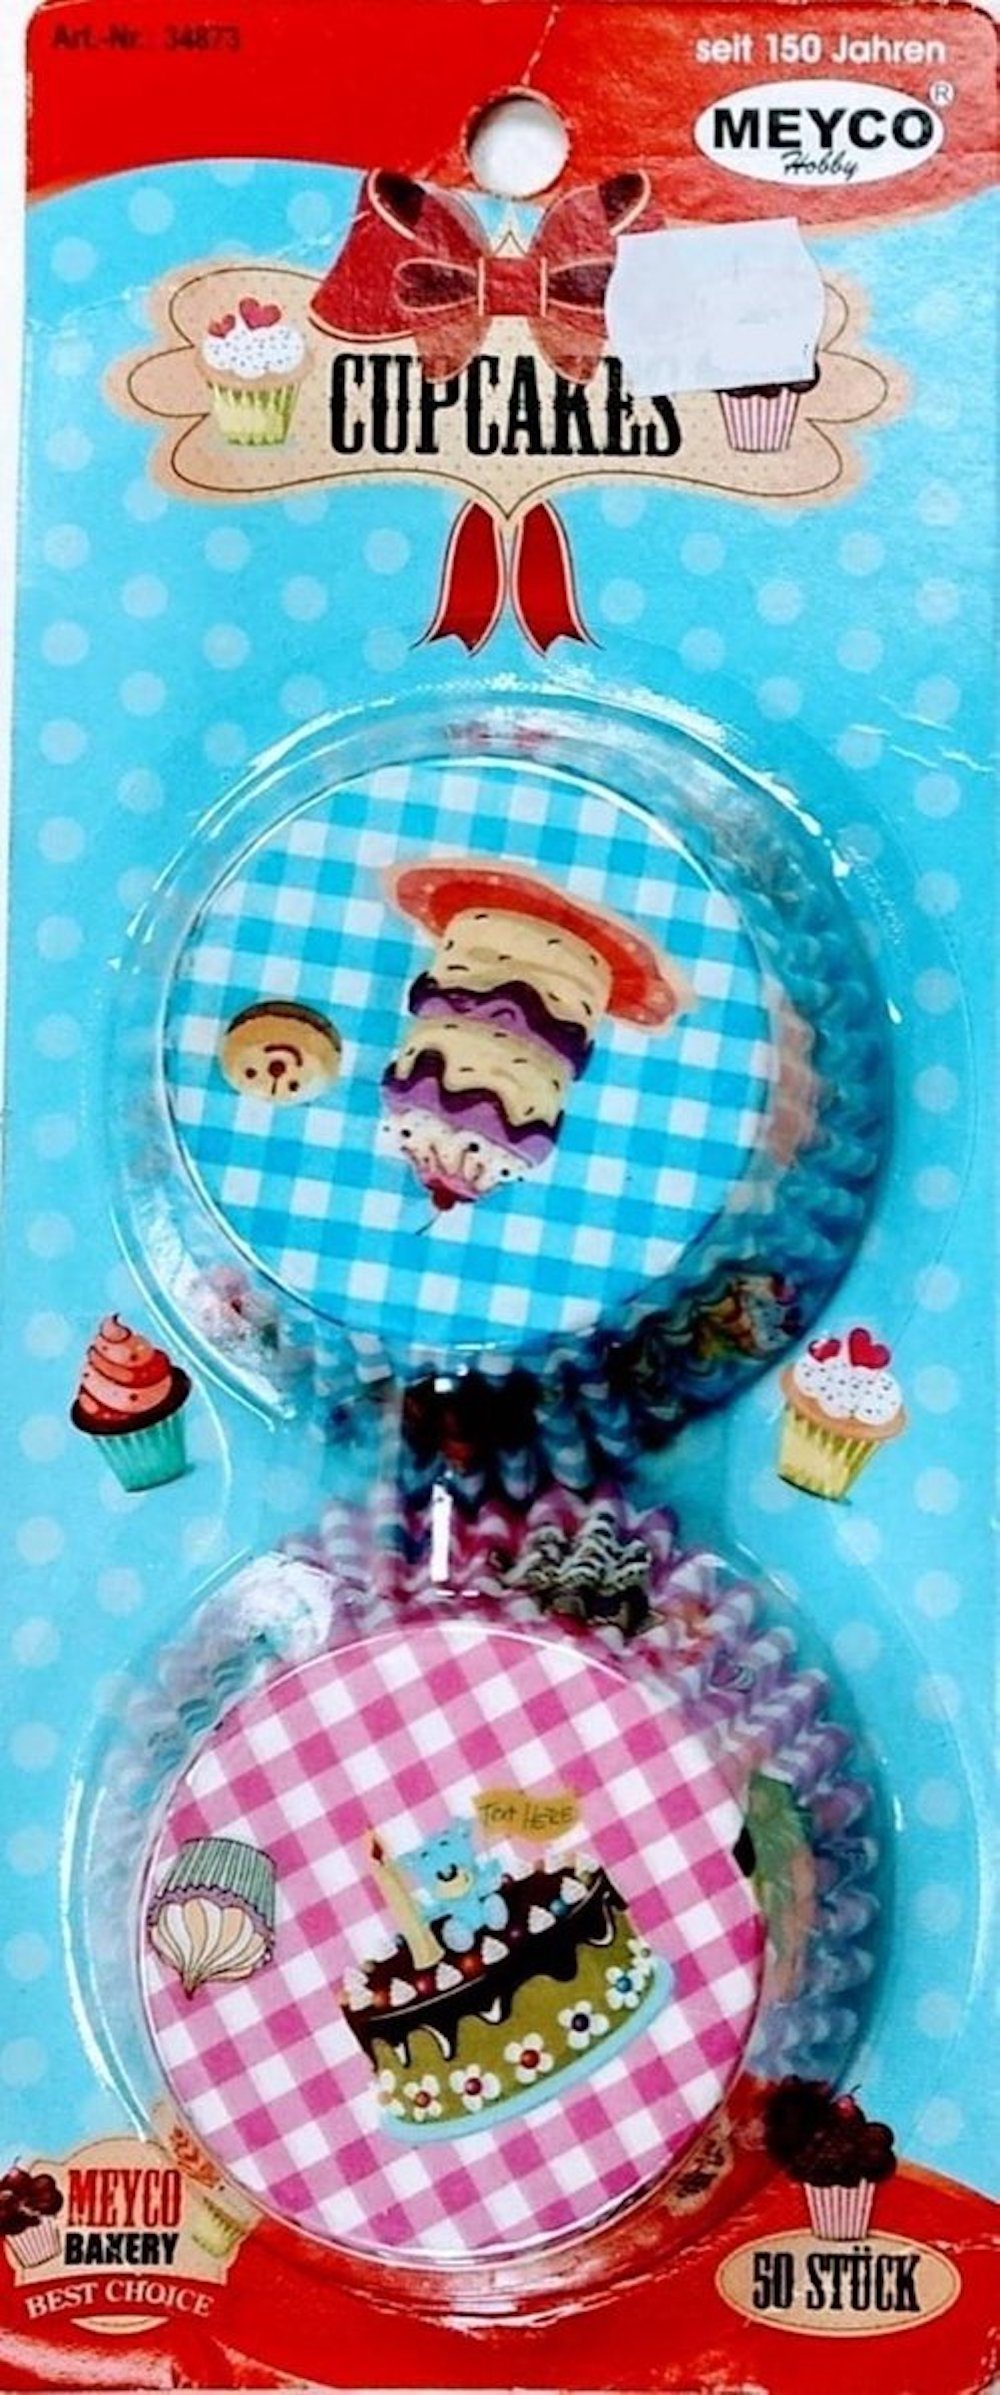 MEYCO Hobby Einweggeschirr-Set Muffin-Förmchen, 50 Stück, rosa/blau